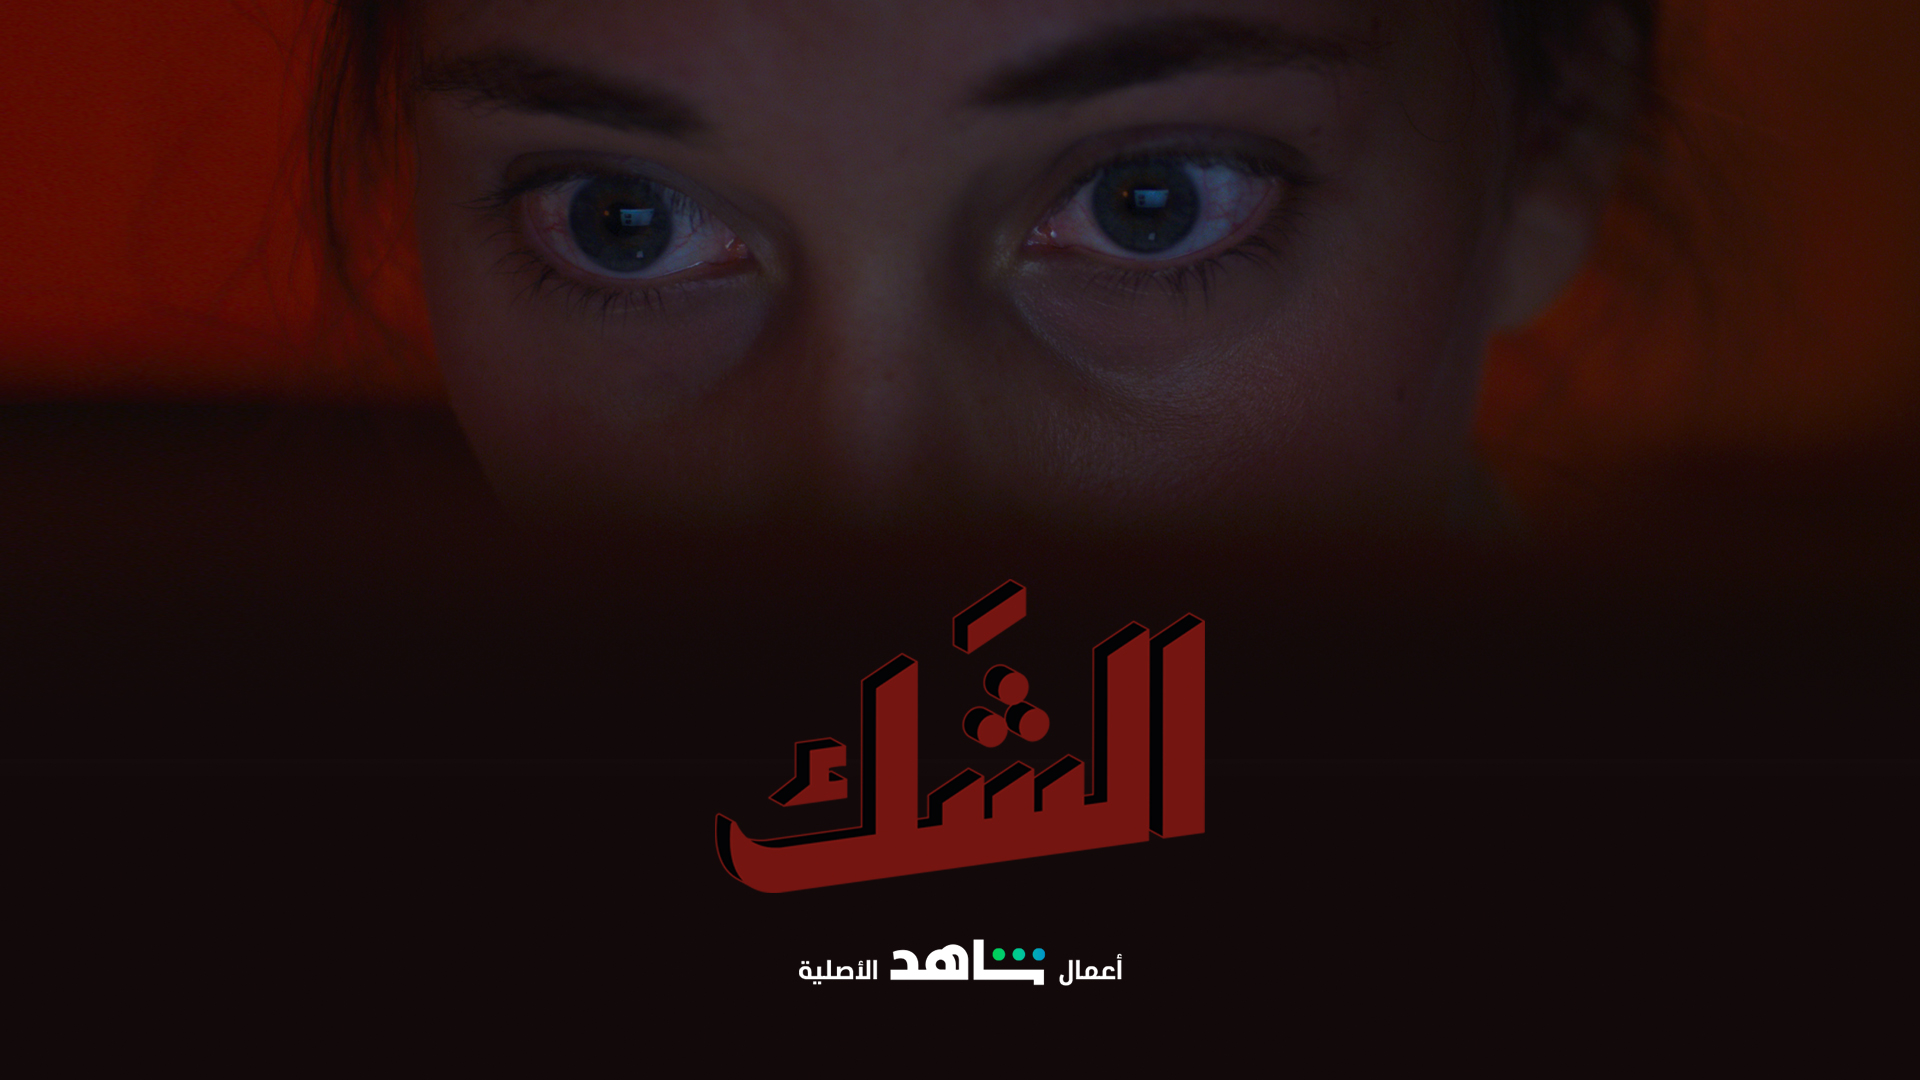 مسلسلات وأفلام عربية وأجنبية وإنتاجات حصرية وعروض أولى لـ 